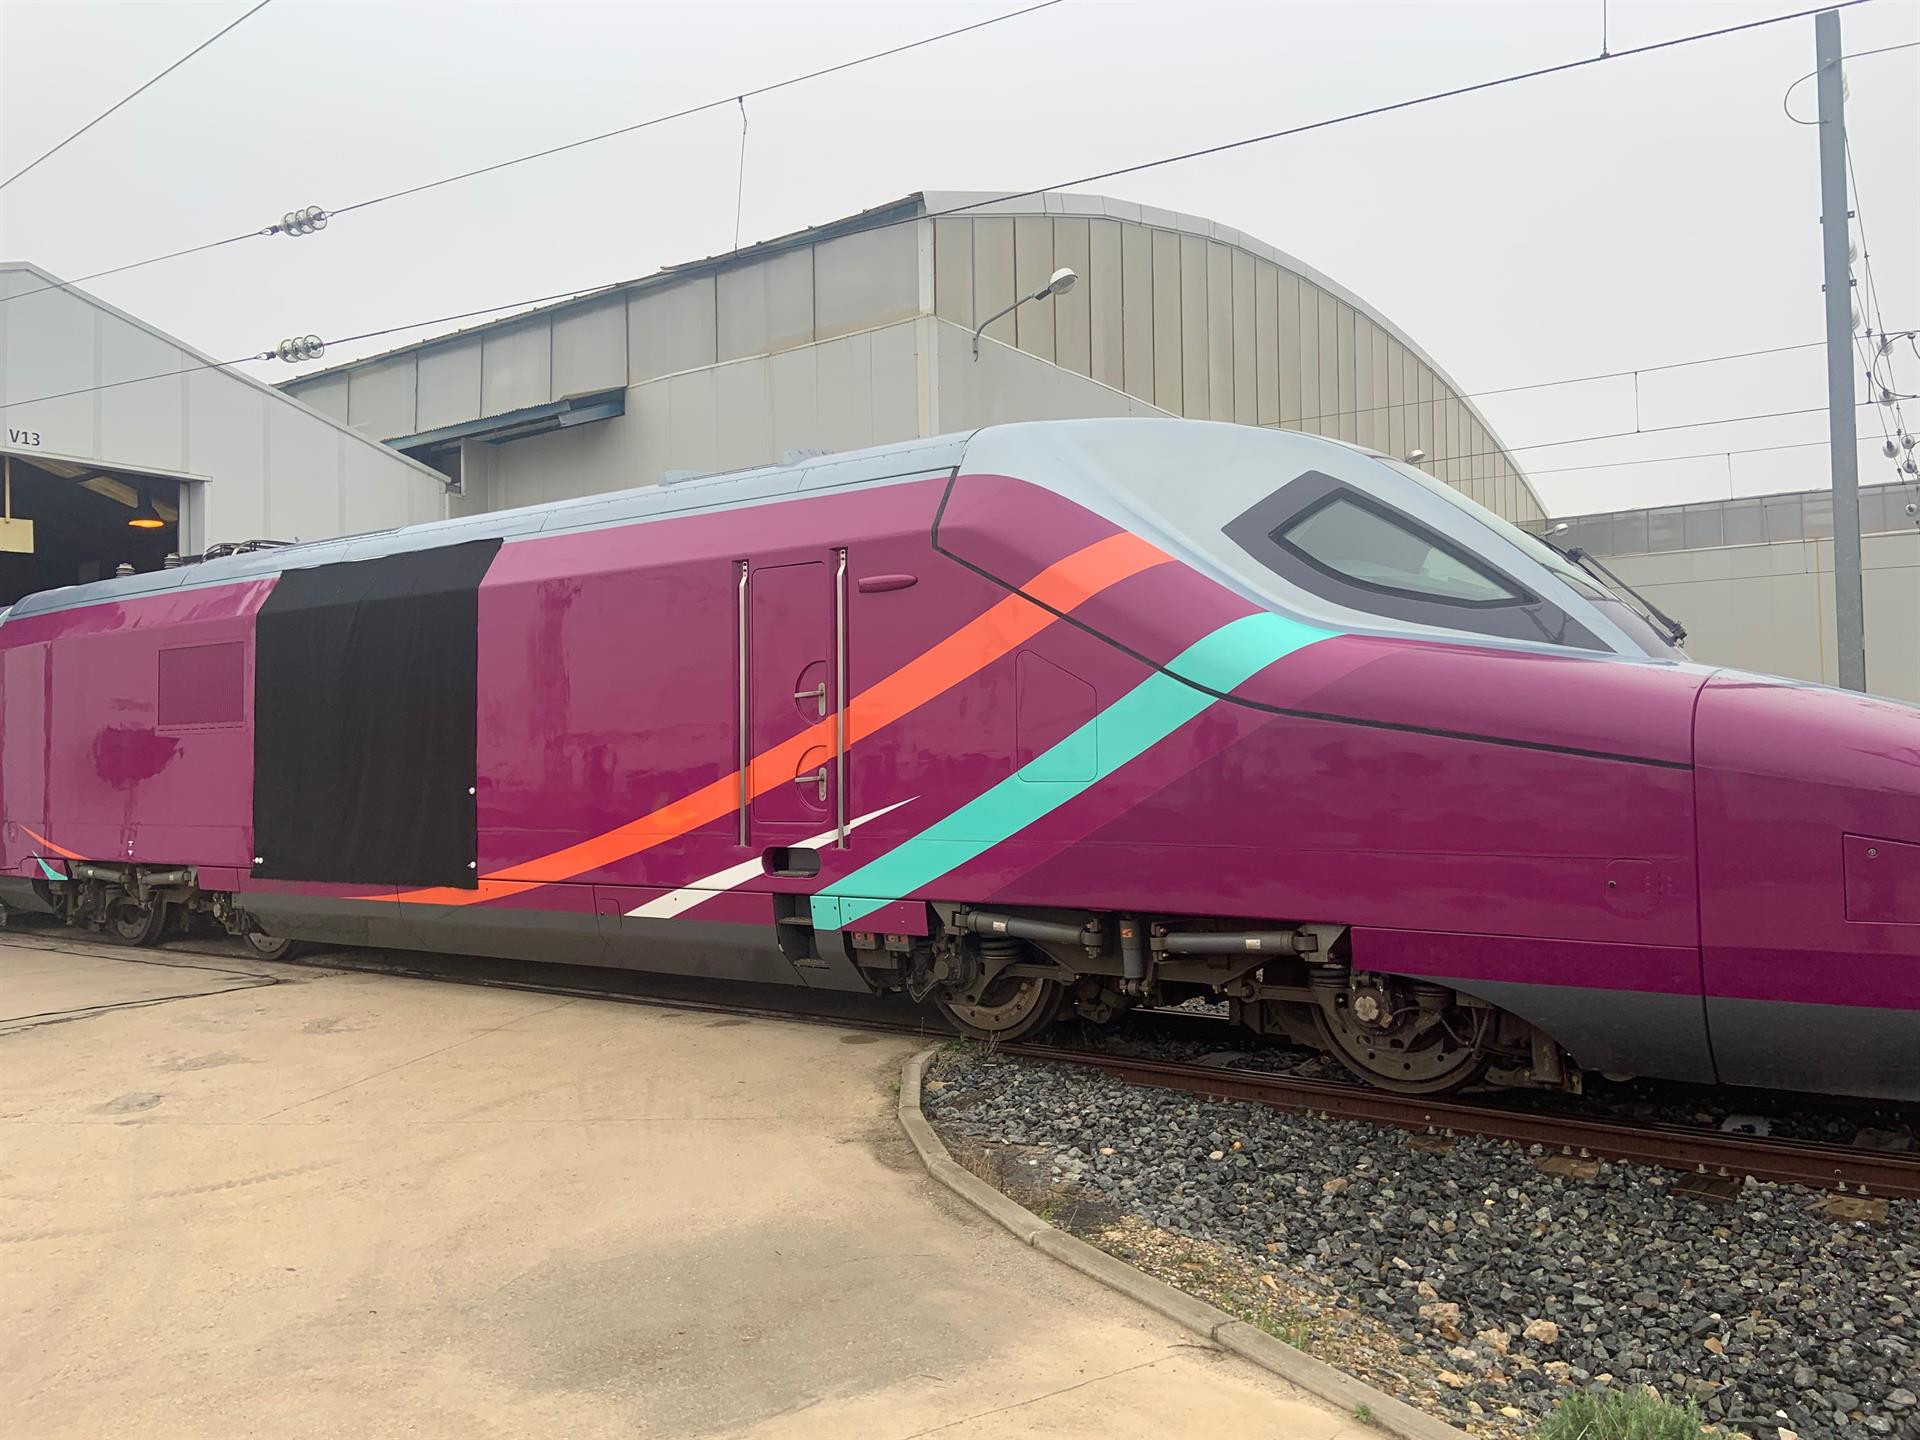 AVLO, el nuevo tren 'low cost' de Rodalies Barcelona-Madrid / ARCHIVO